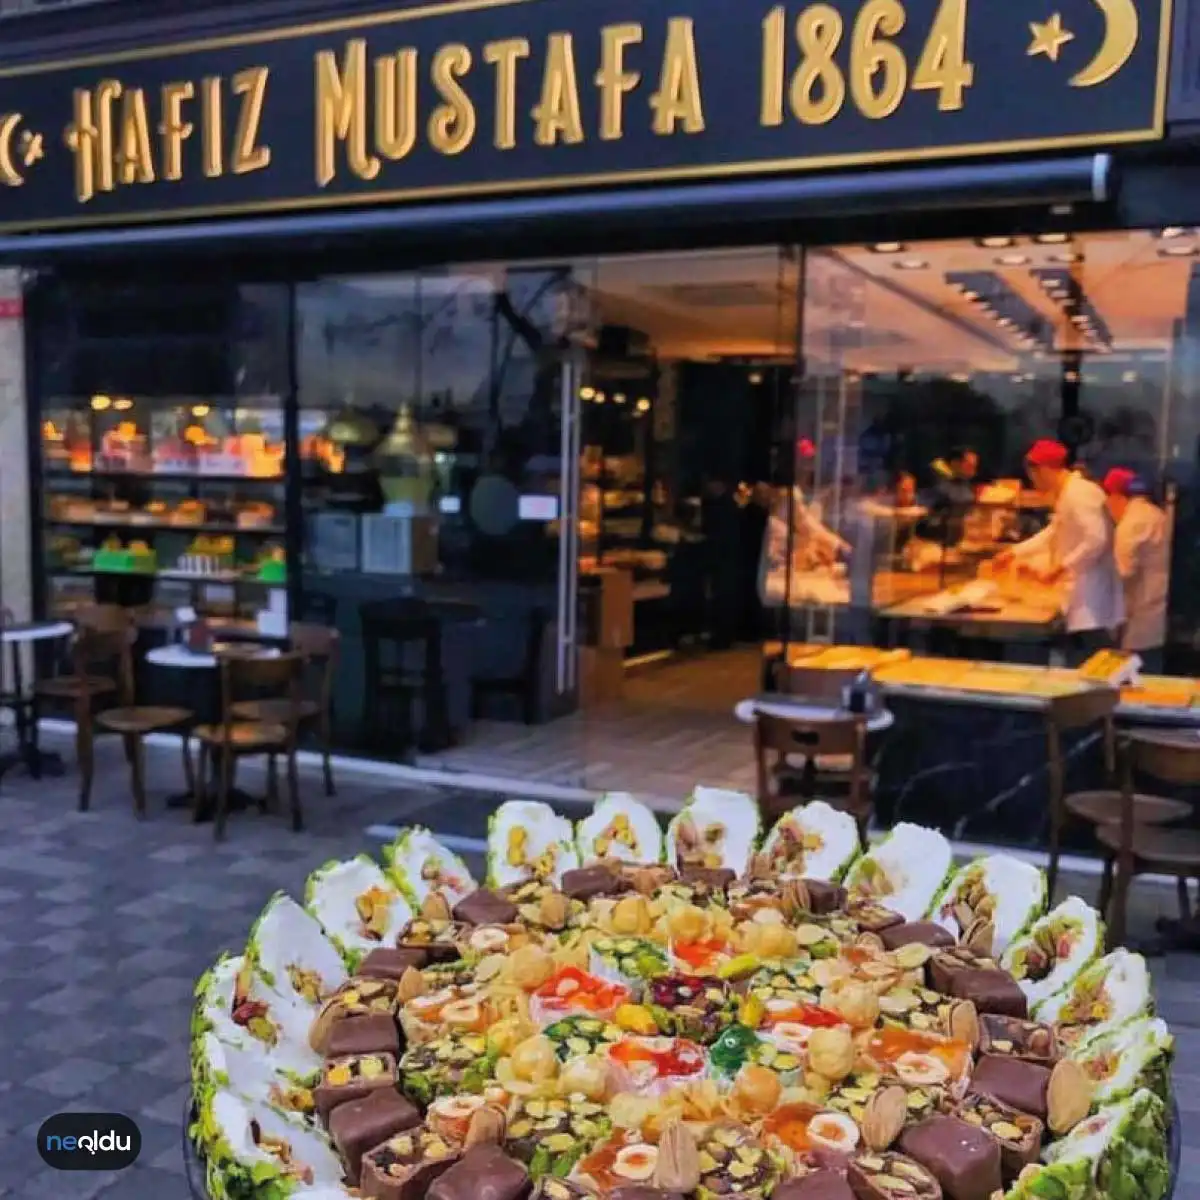 İstanbul'un En İyi Lokumcuları Hafız Mustafa 1864